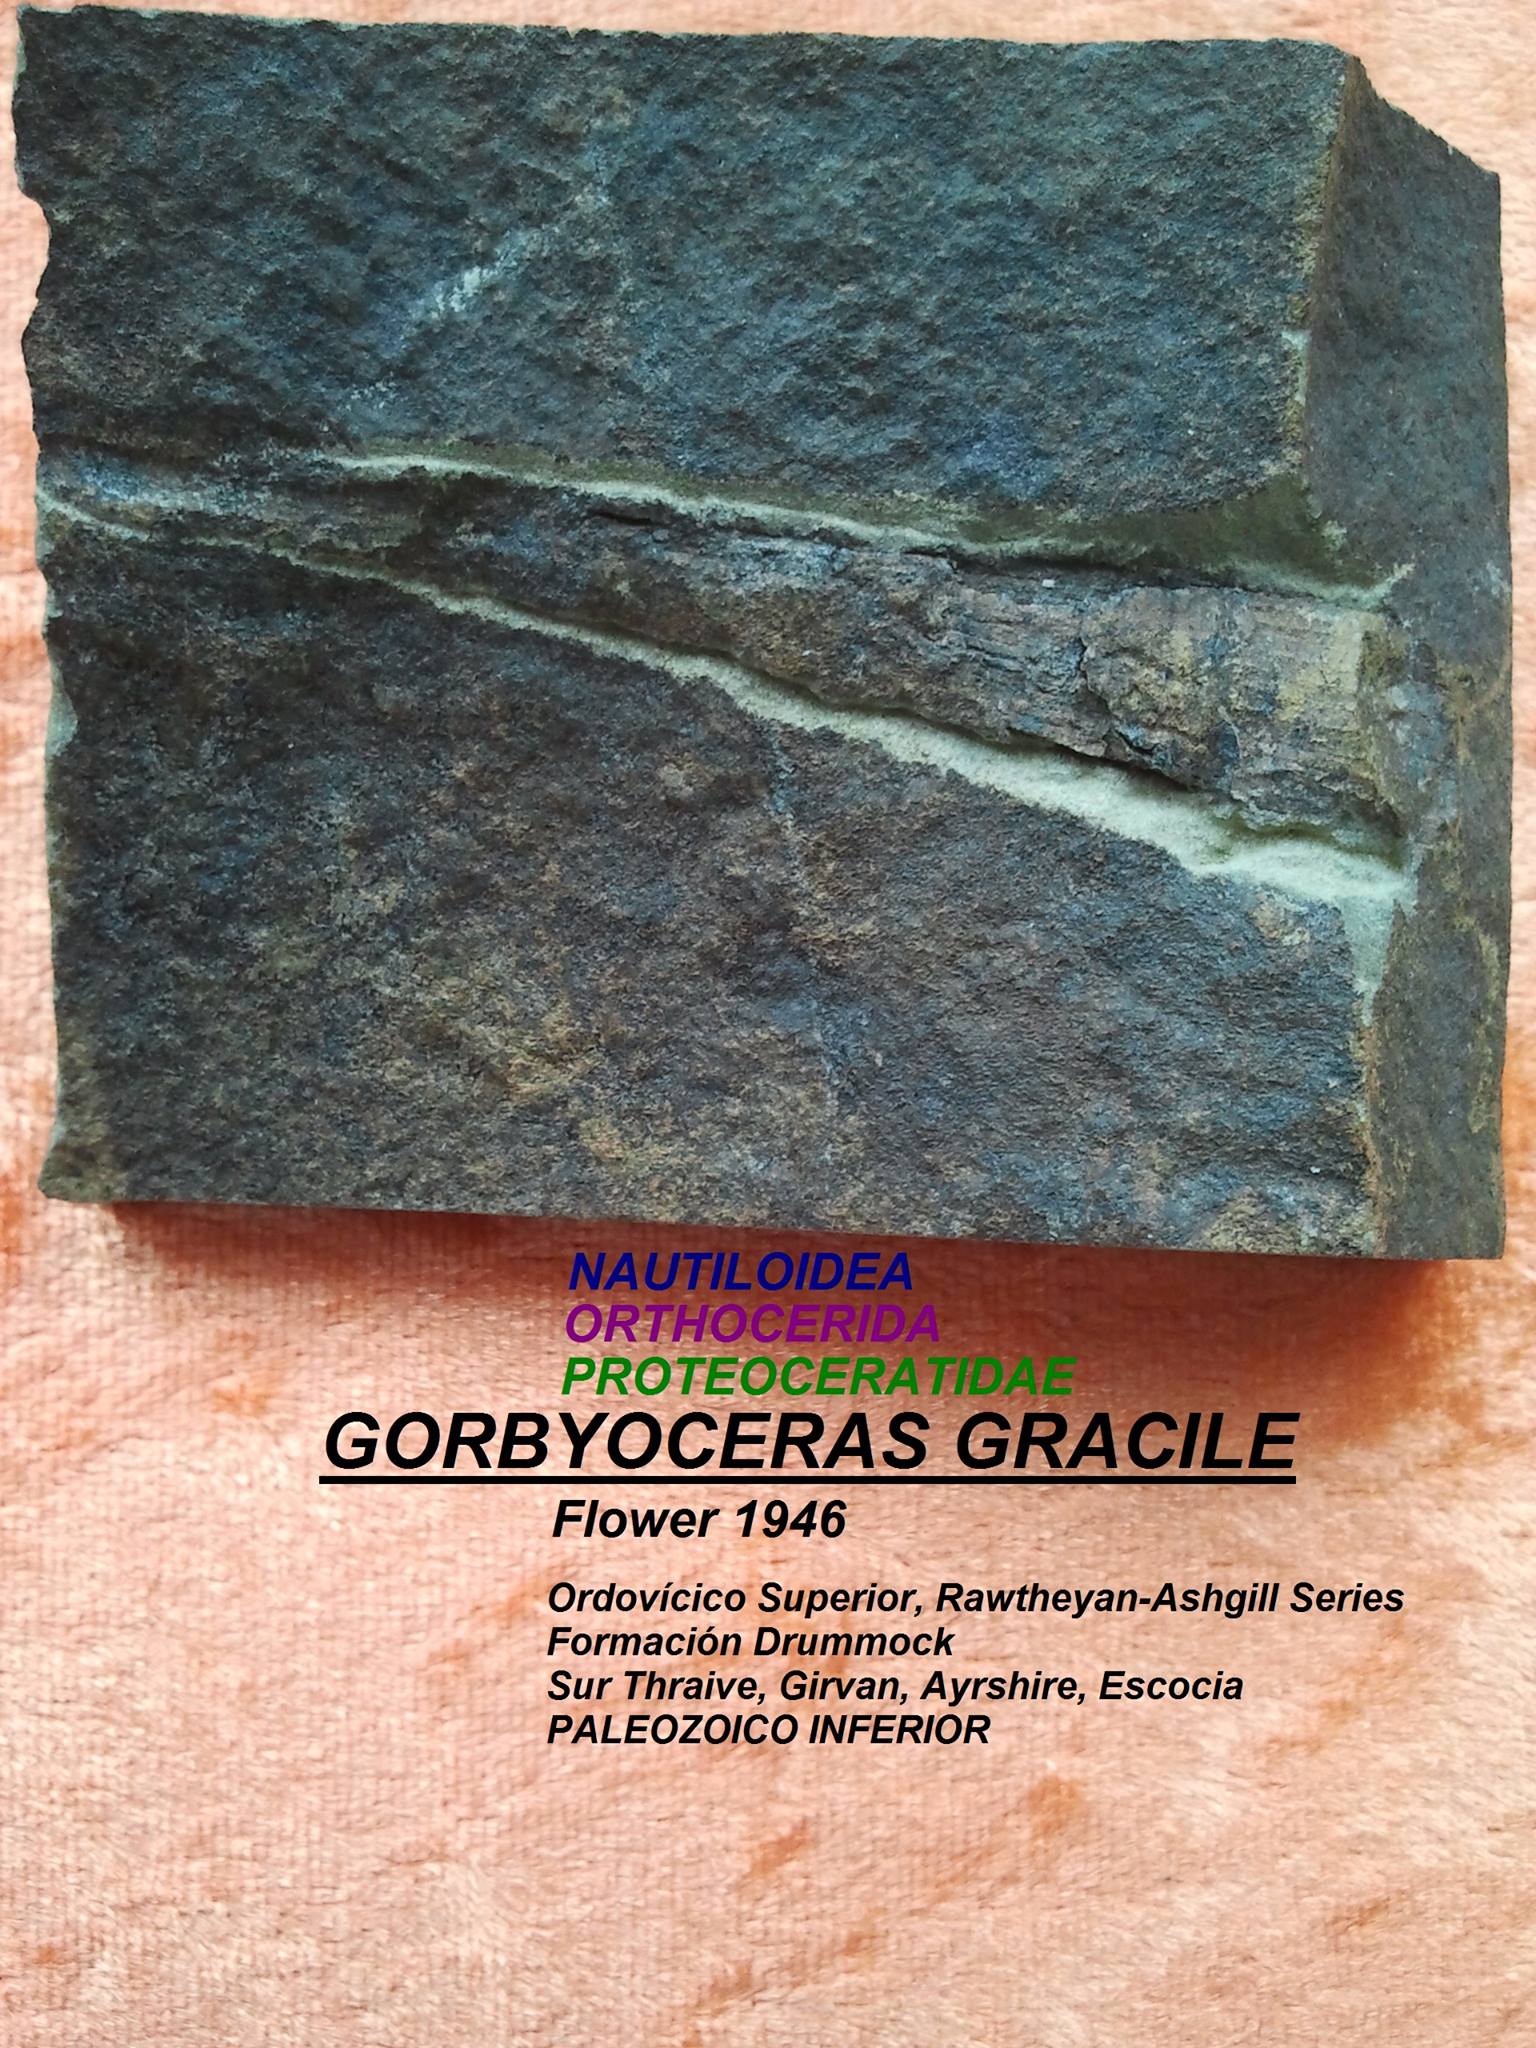 GORBYOCERAS GRACILE